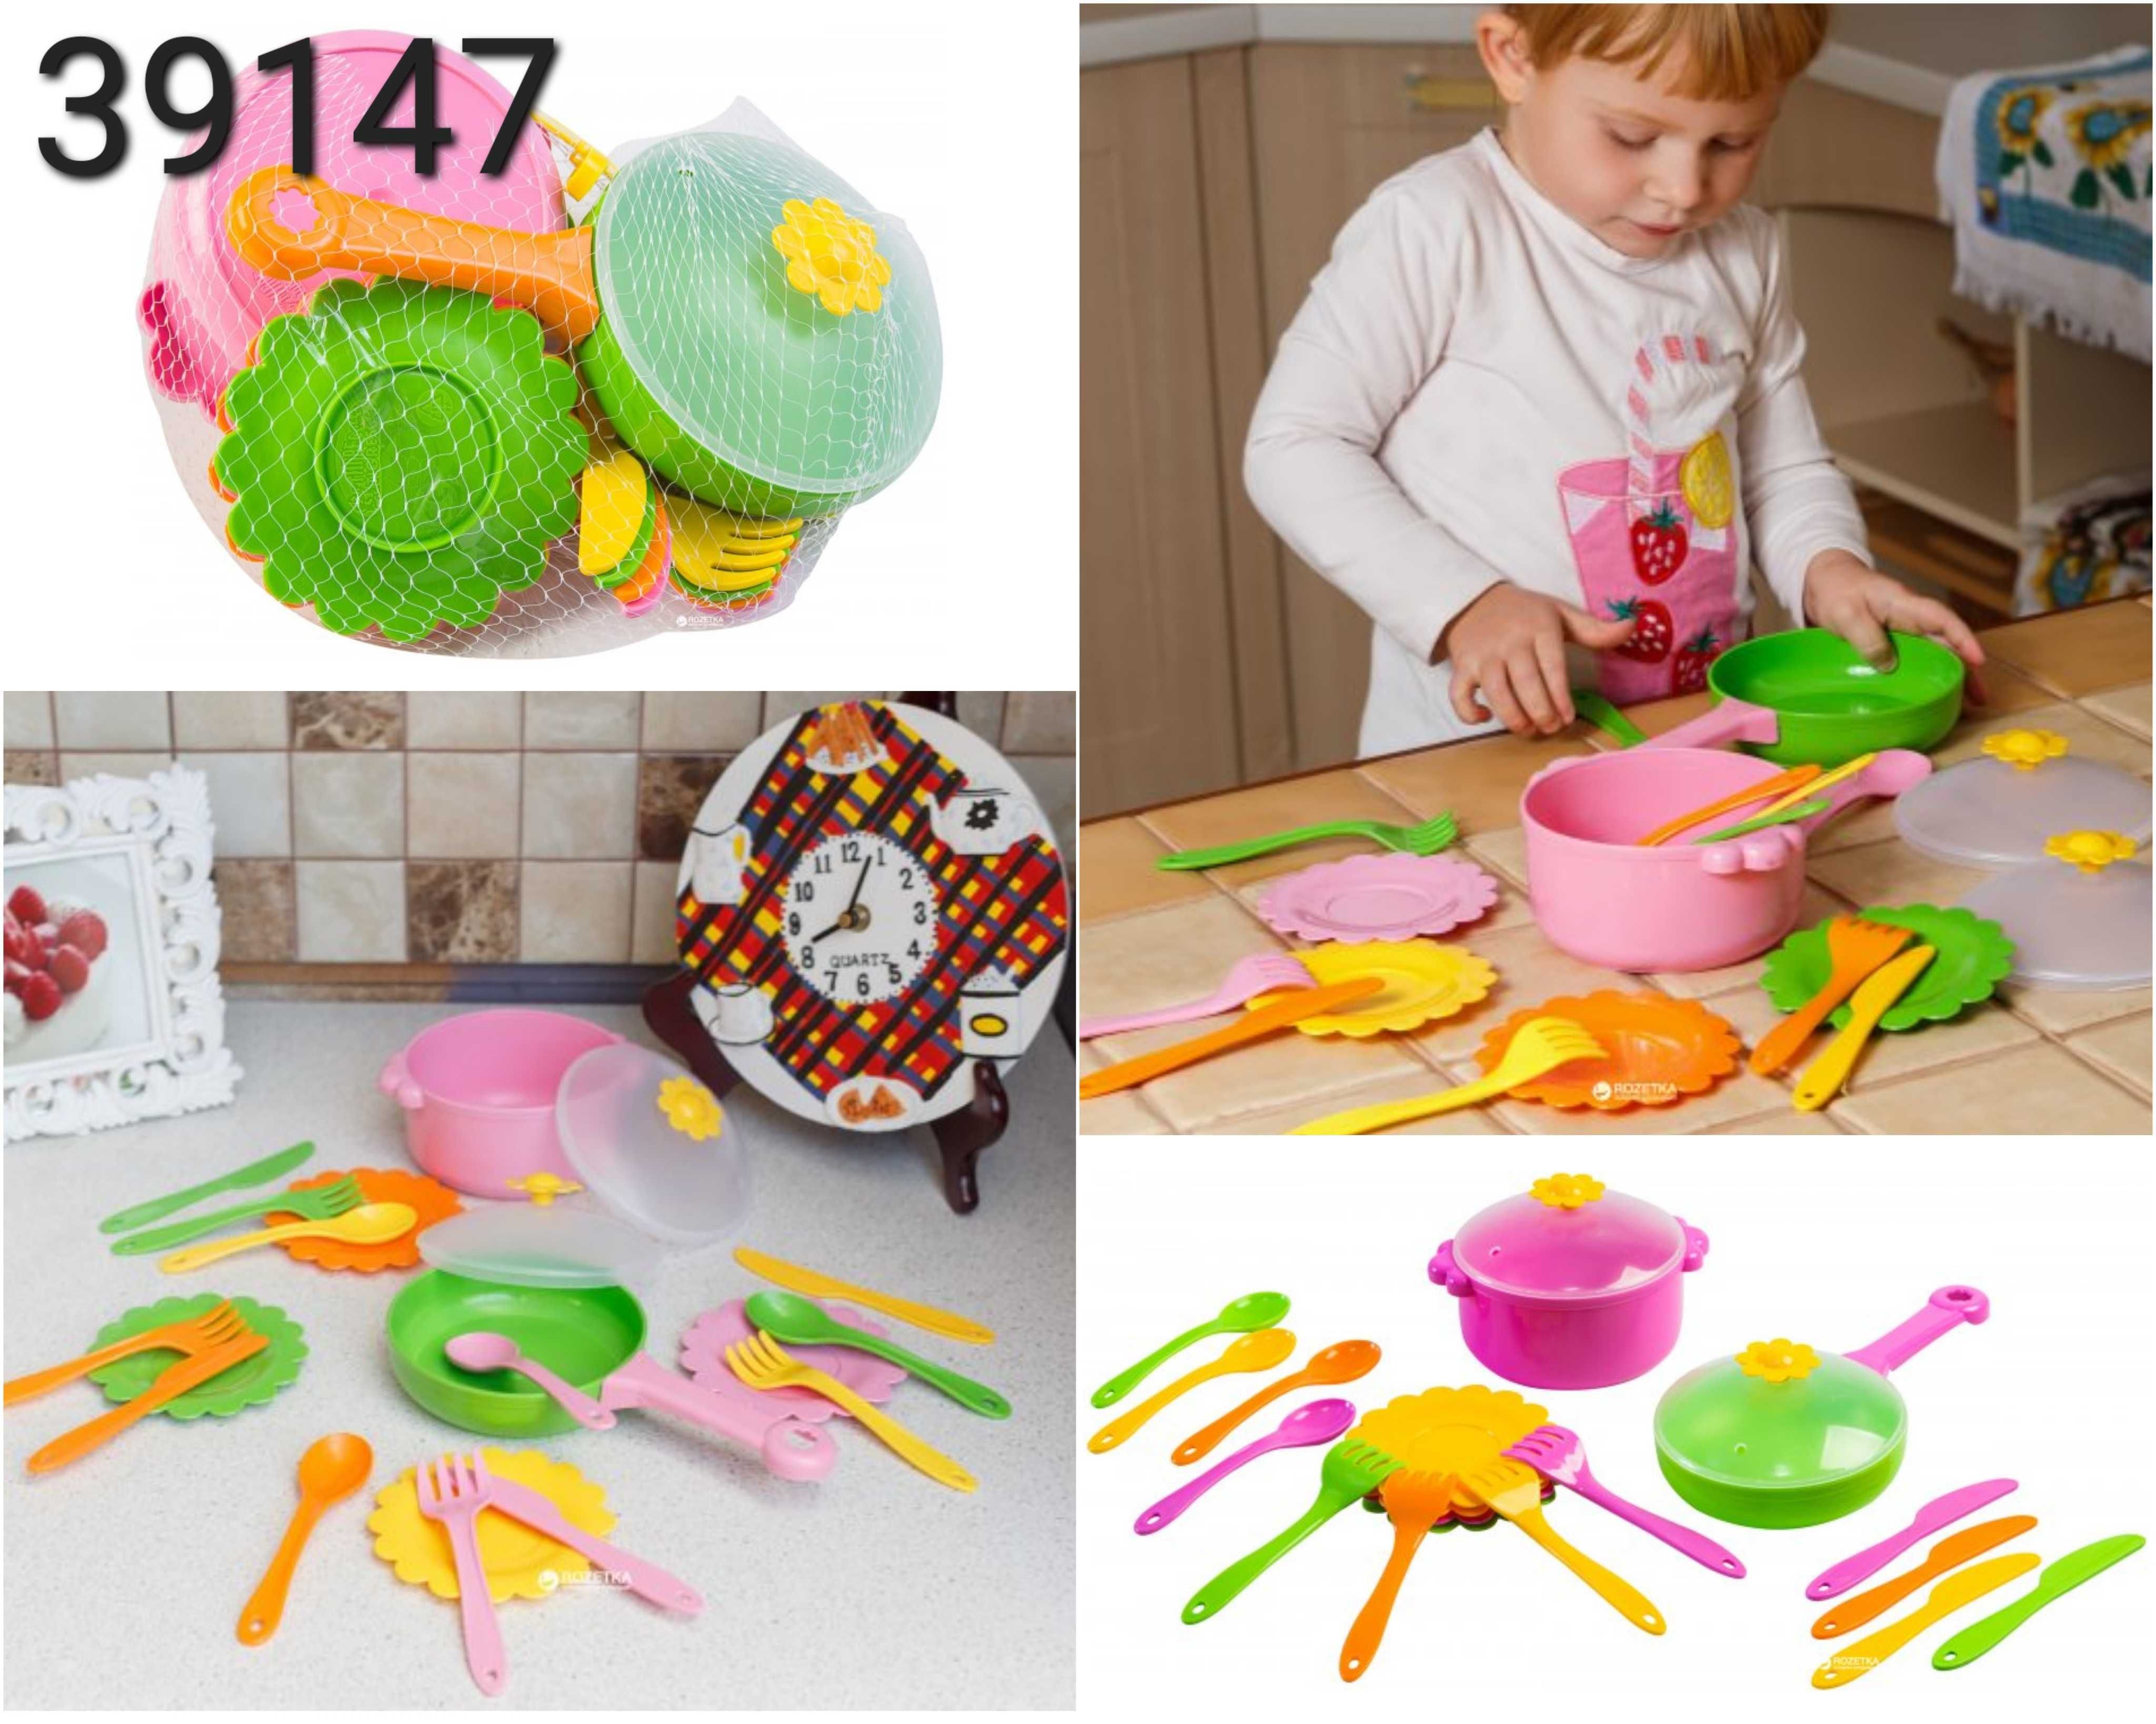 Набір дитячого посуду дитяча посудка детская посудка Тигрес